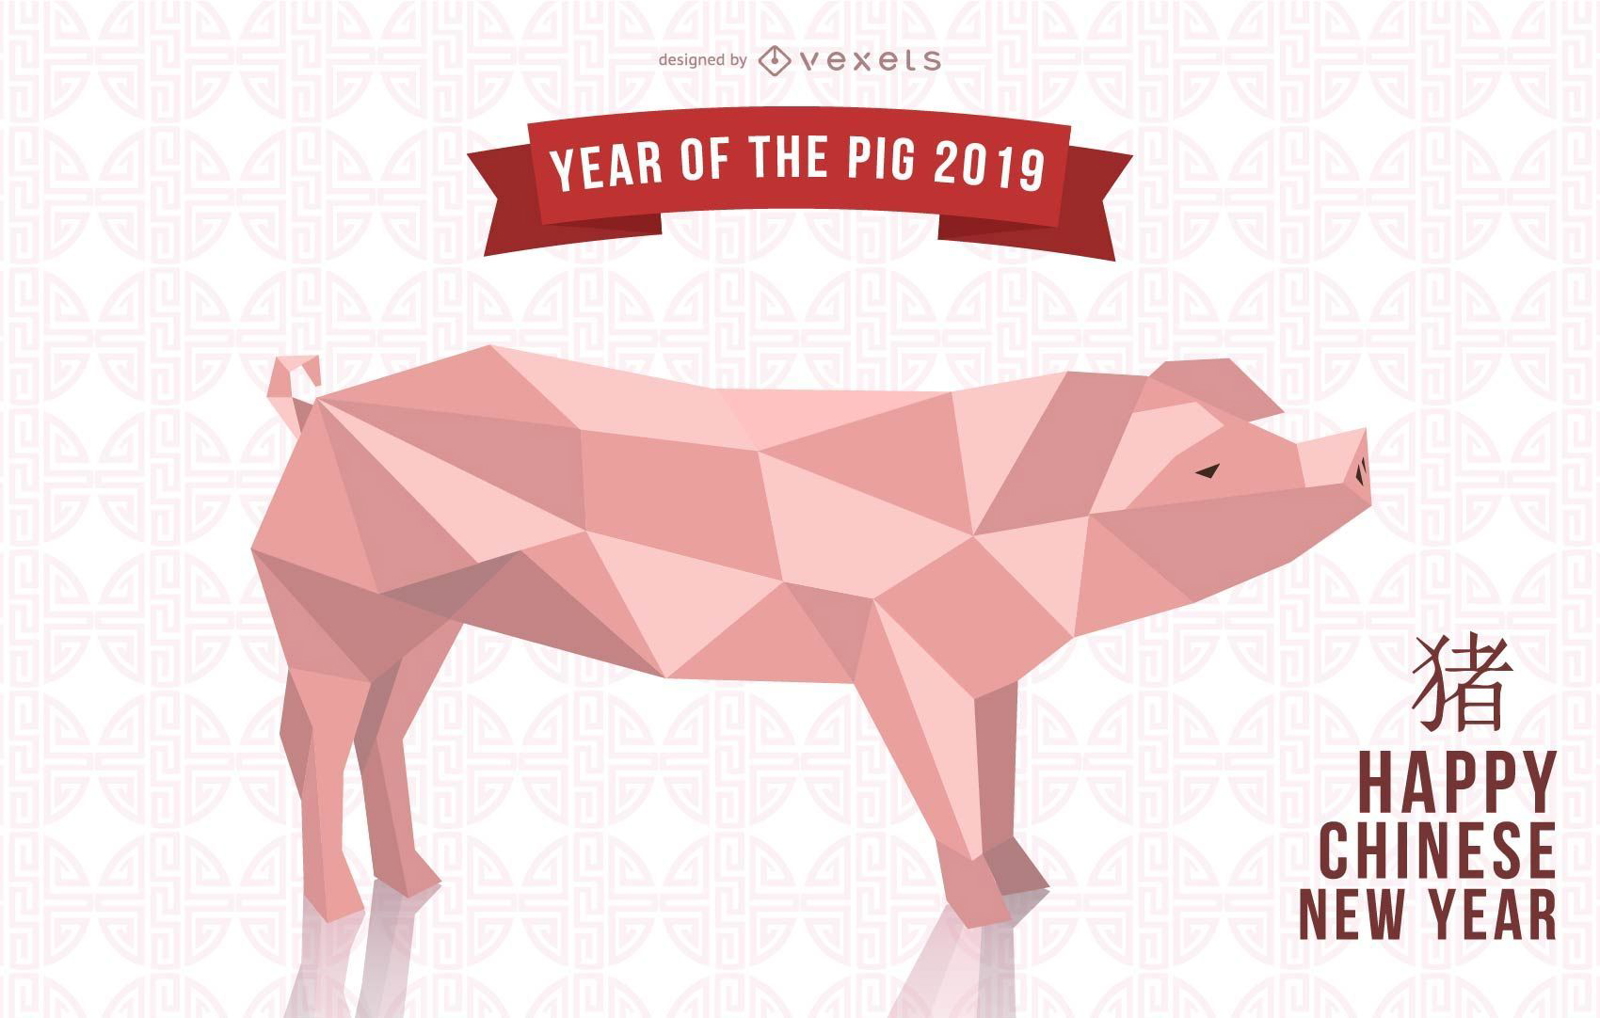 Dise?o del a?o del cerdo 2019.